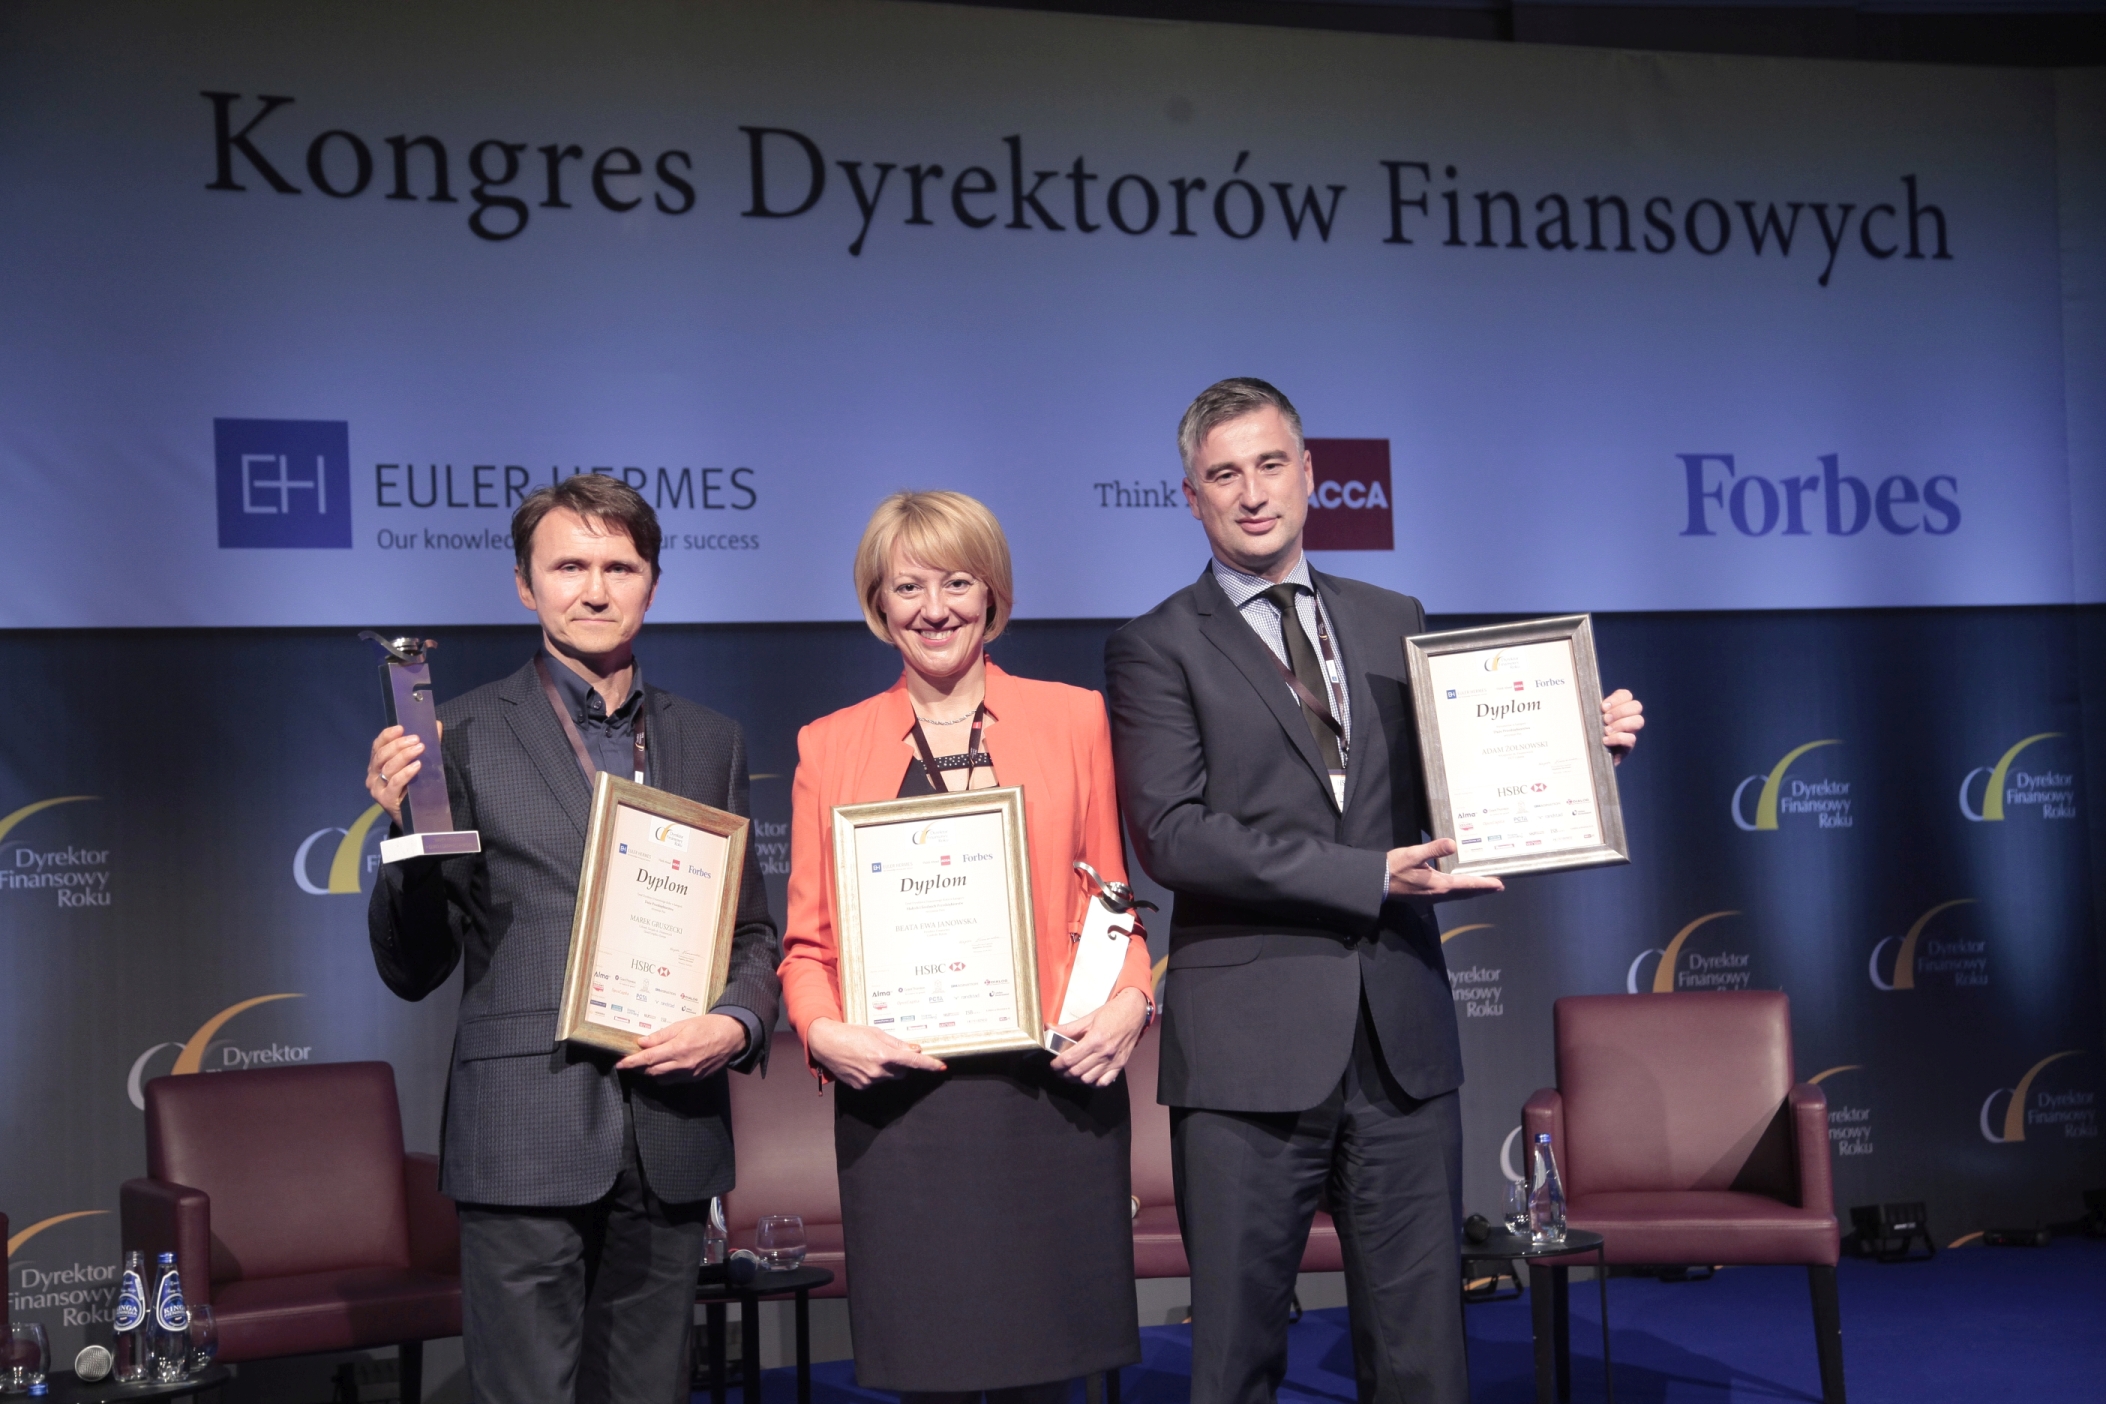 Dyrektorzy Finansowi Roku wybrani po raz dziesiąty!